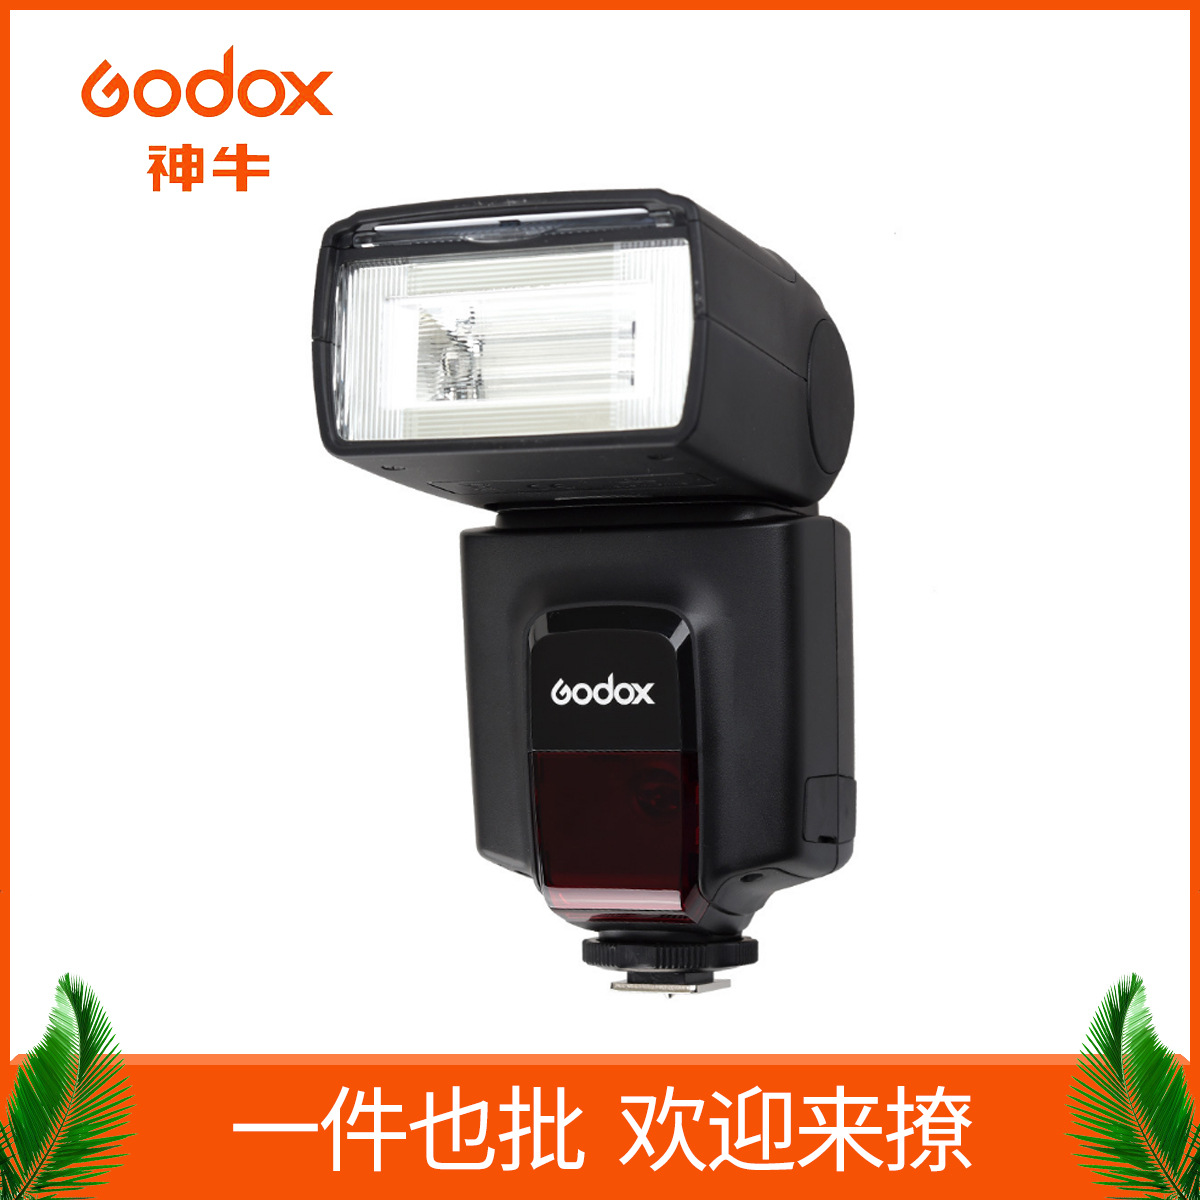 Godox TT520II second-generation flash me...